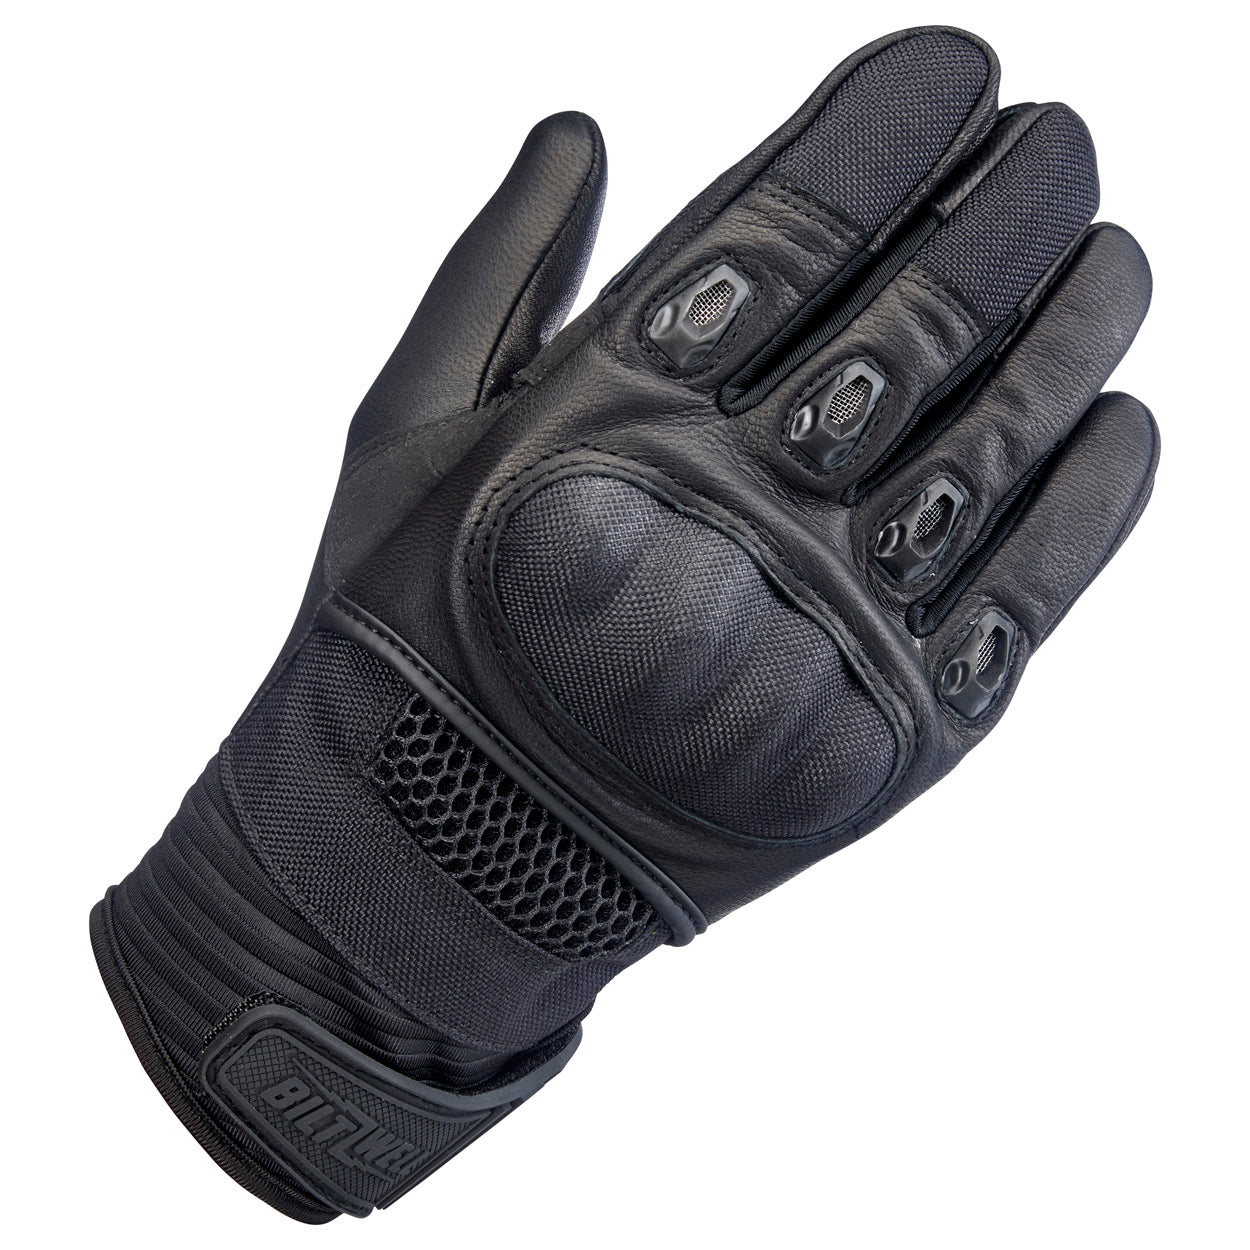 Bridgeport Gloves - Black Out